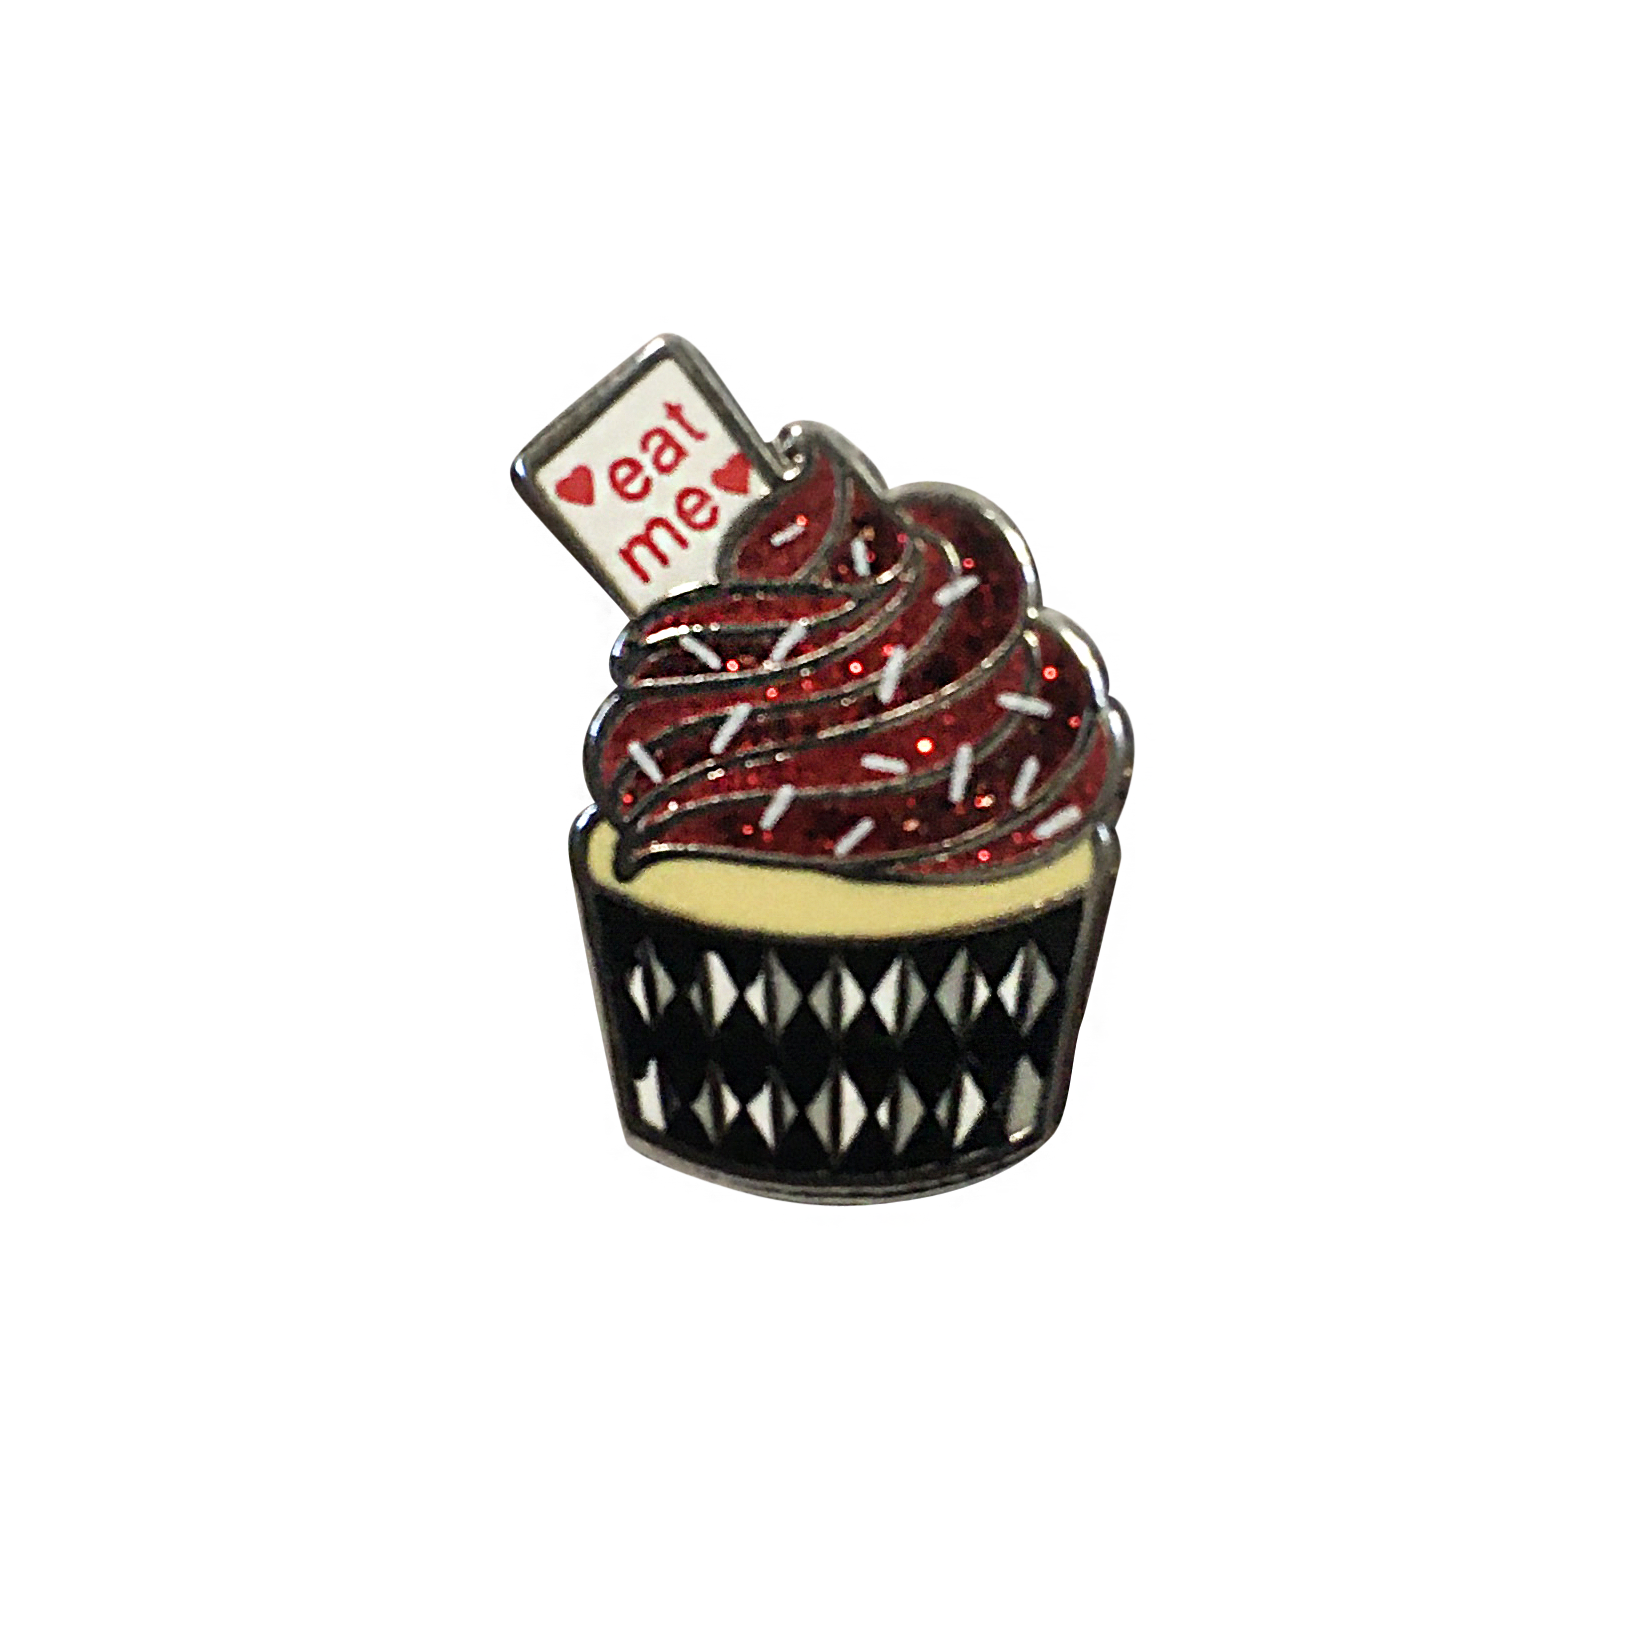 Eat Me Cupcake Pin